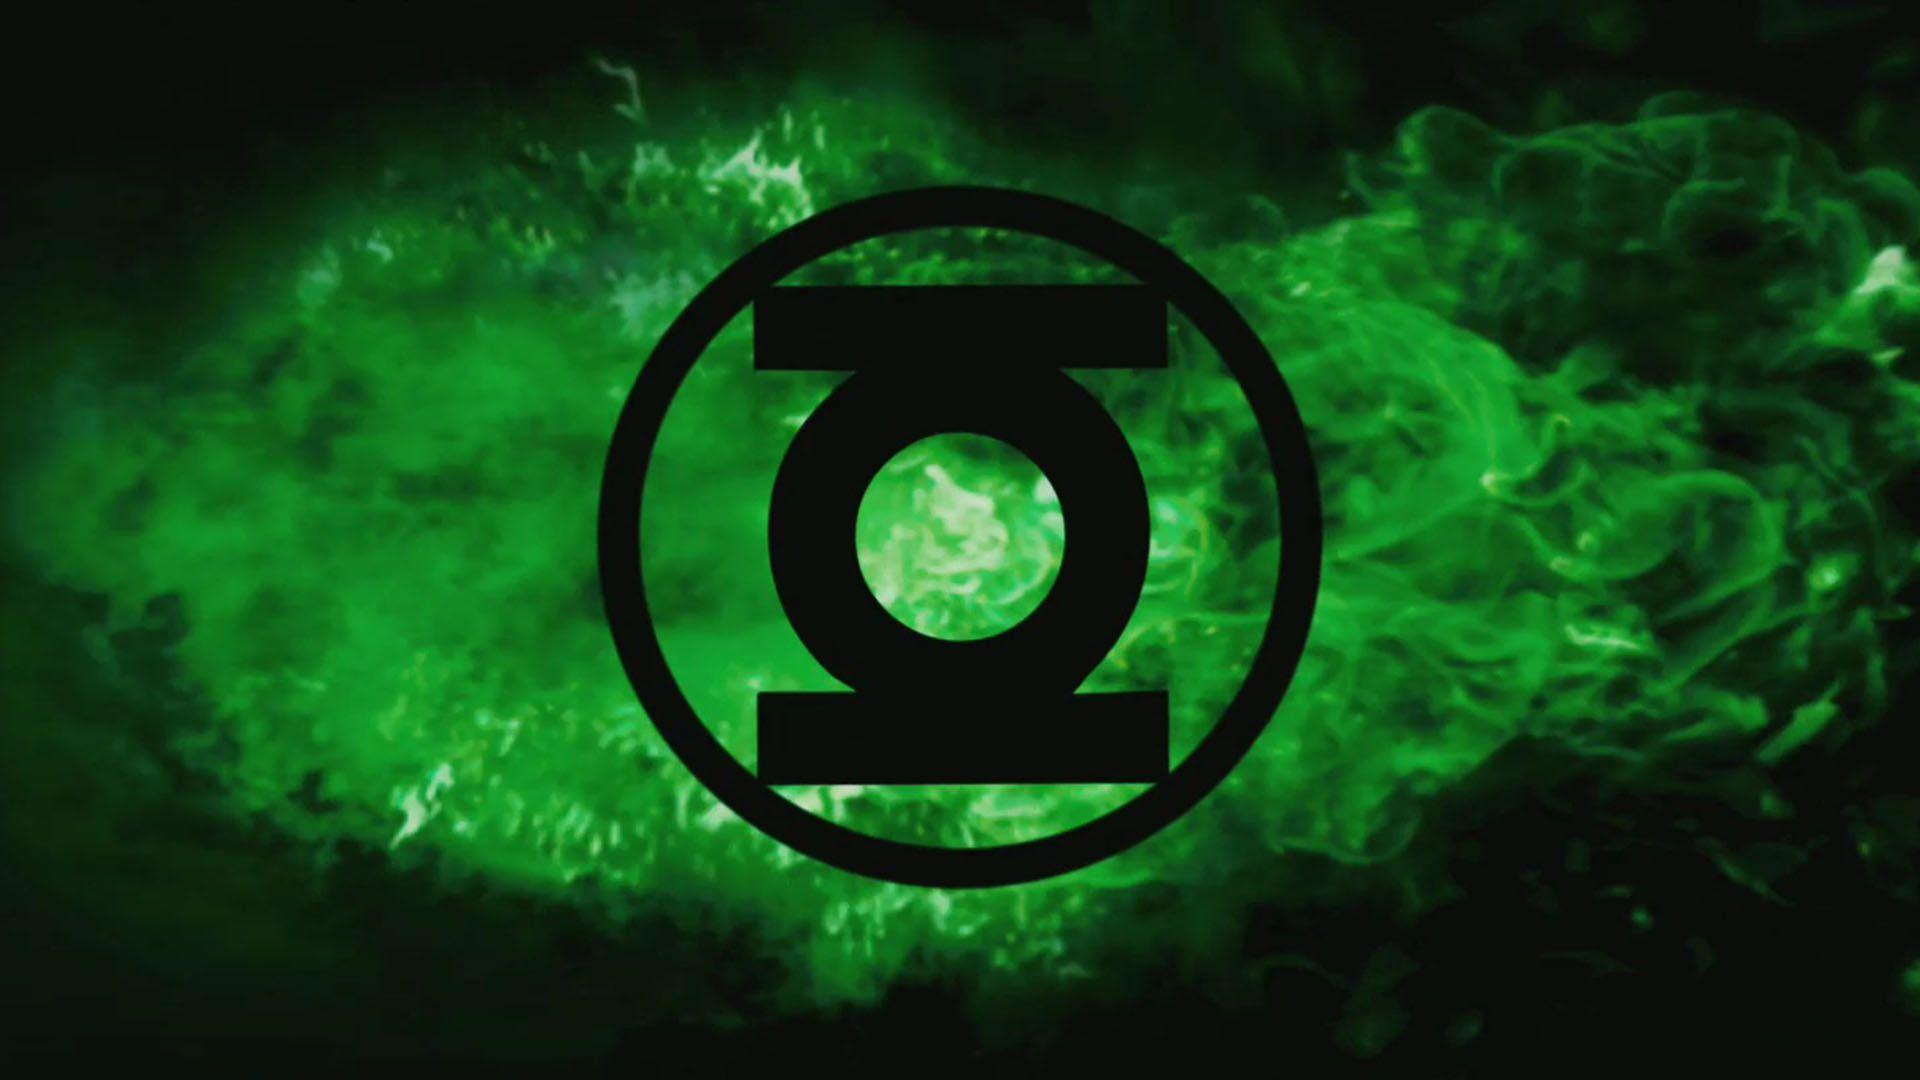 Wallpaper For > Green Lantern Oath Wallpaper HD